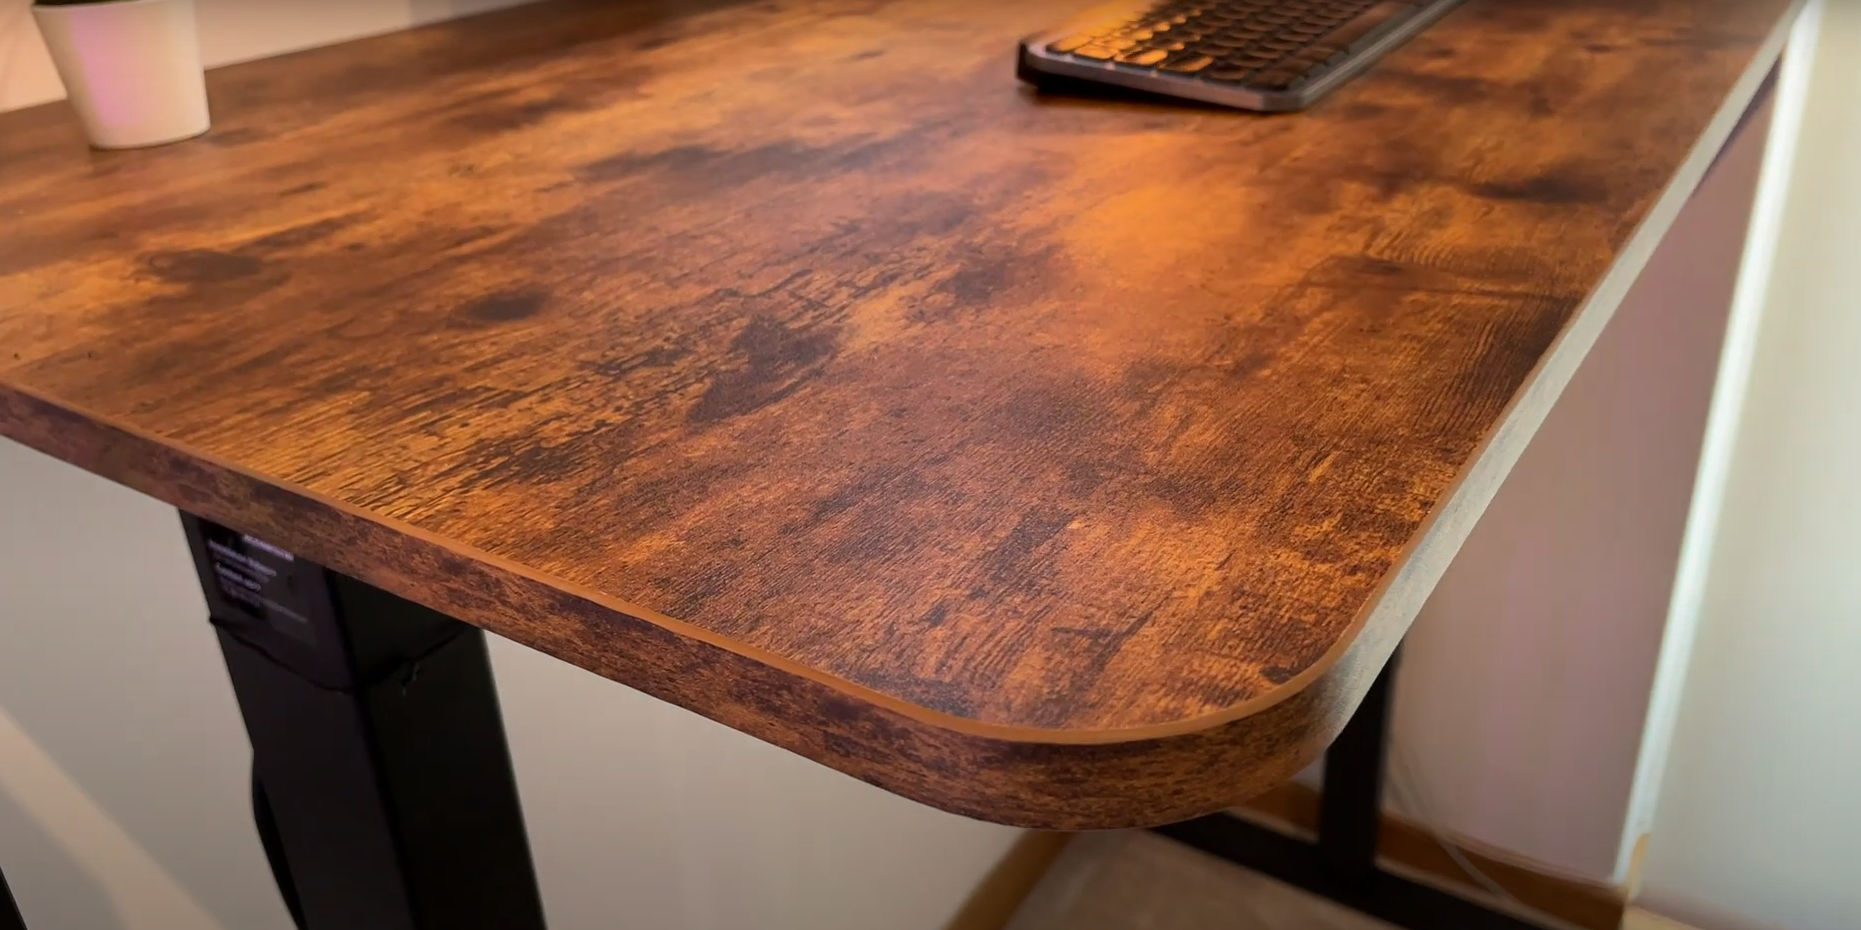 Maidesite Table Top DIY Escritorio de ordenador con agujeros pre-perforados para el hogar y la oficina